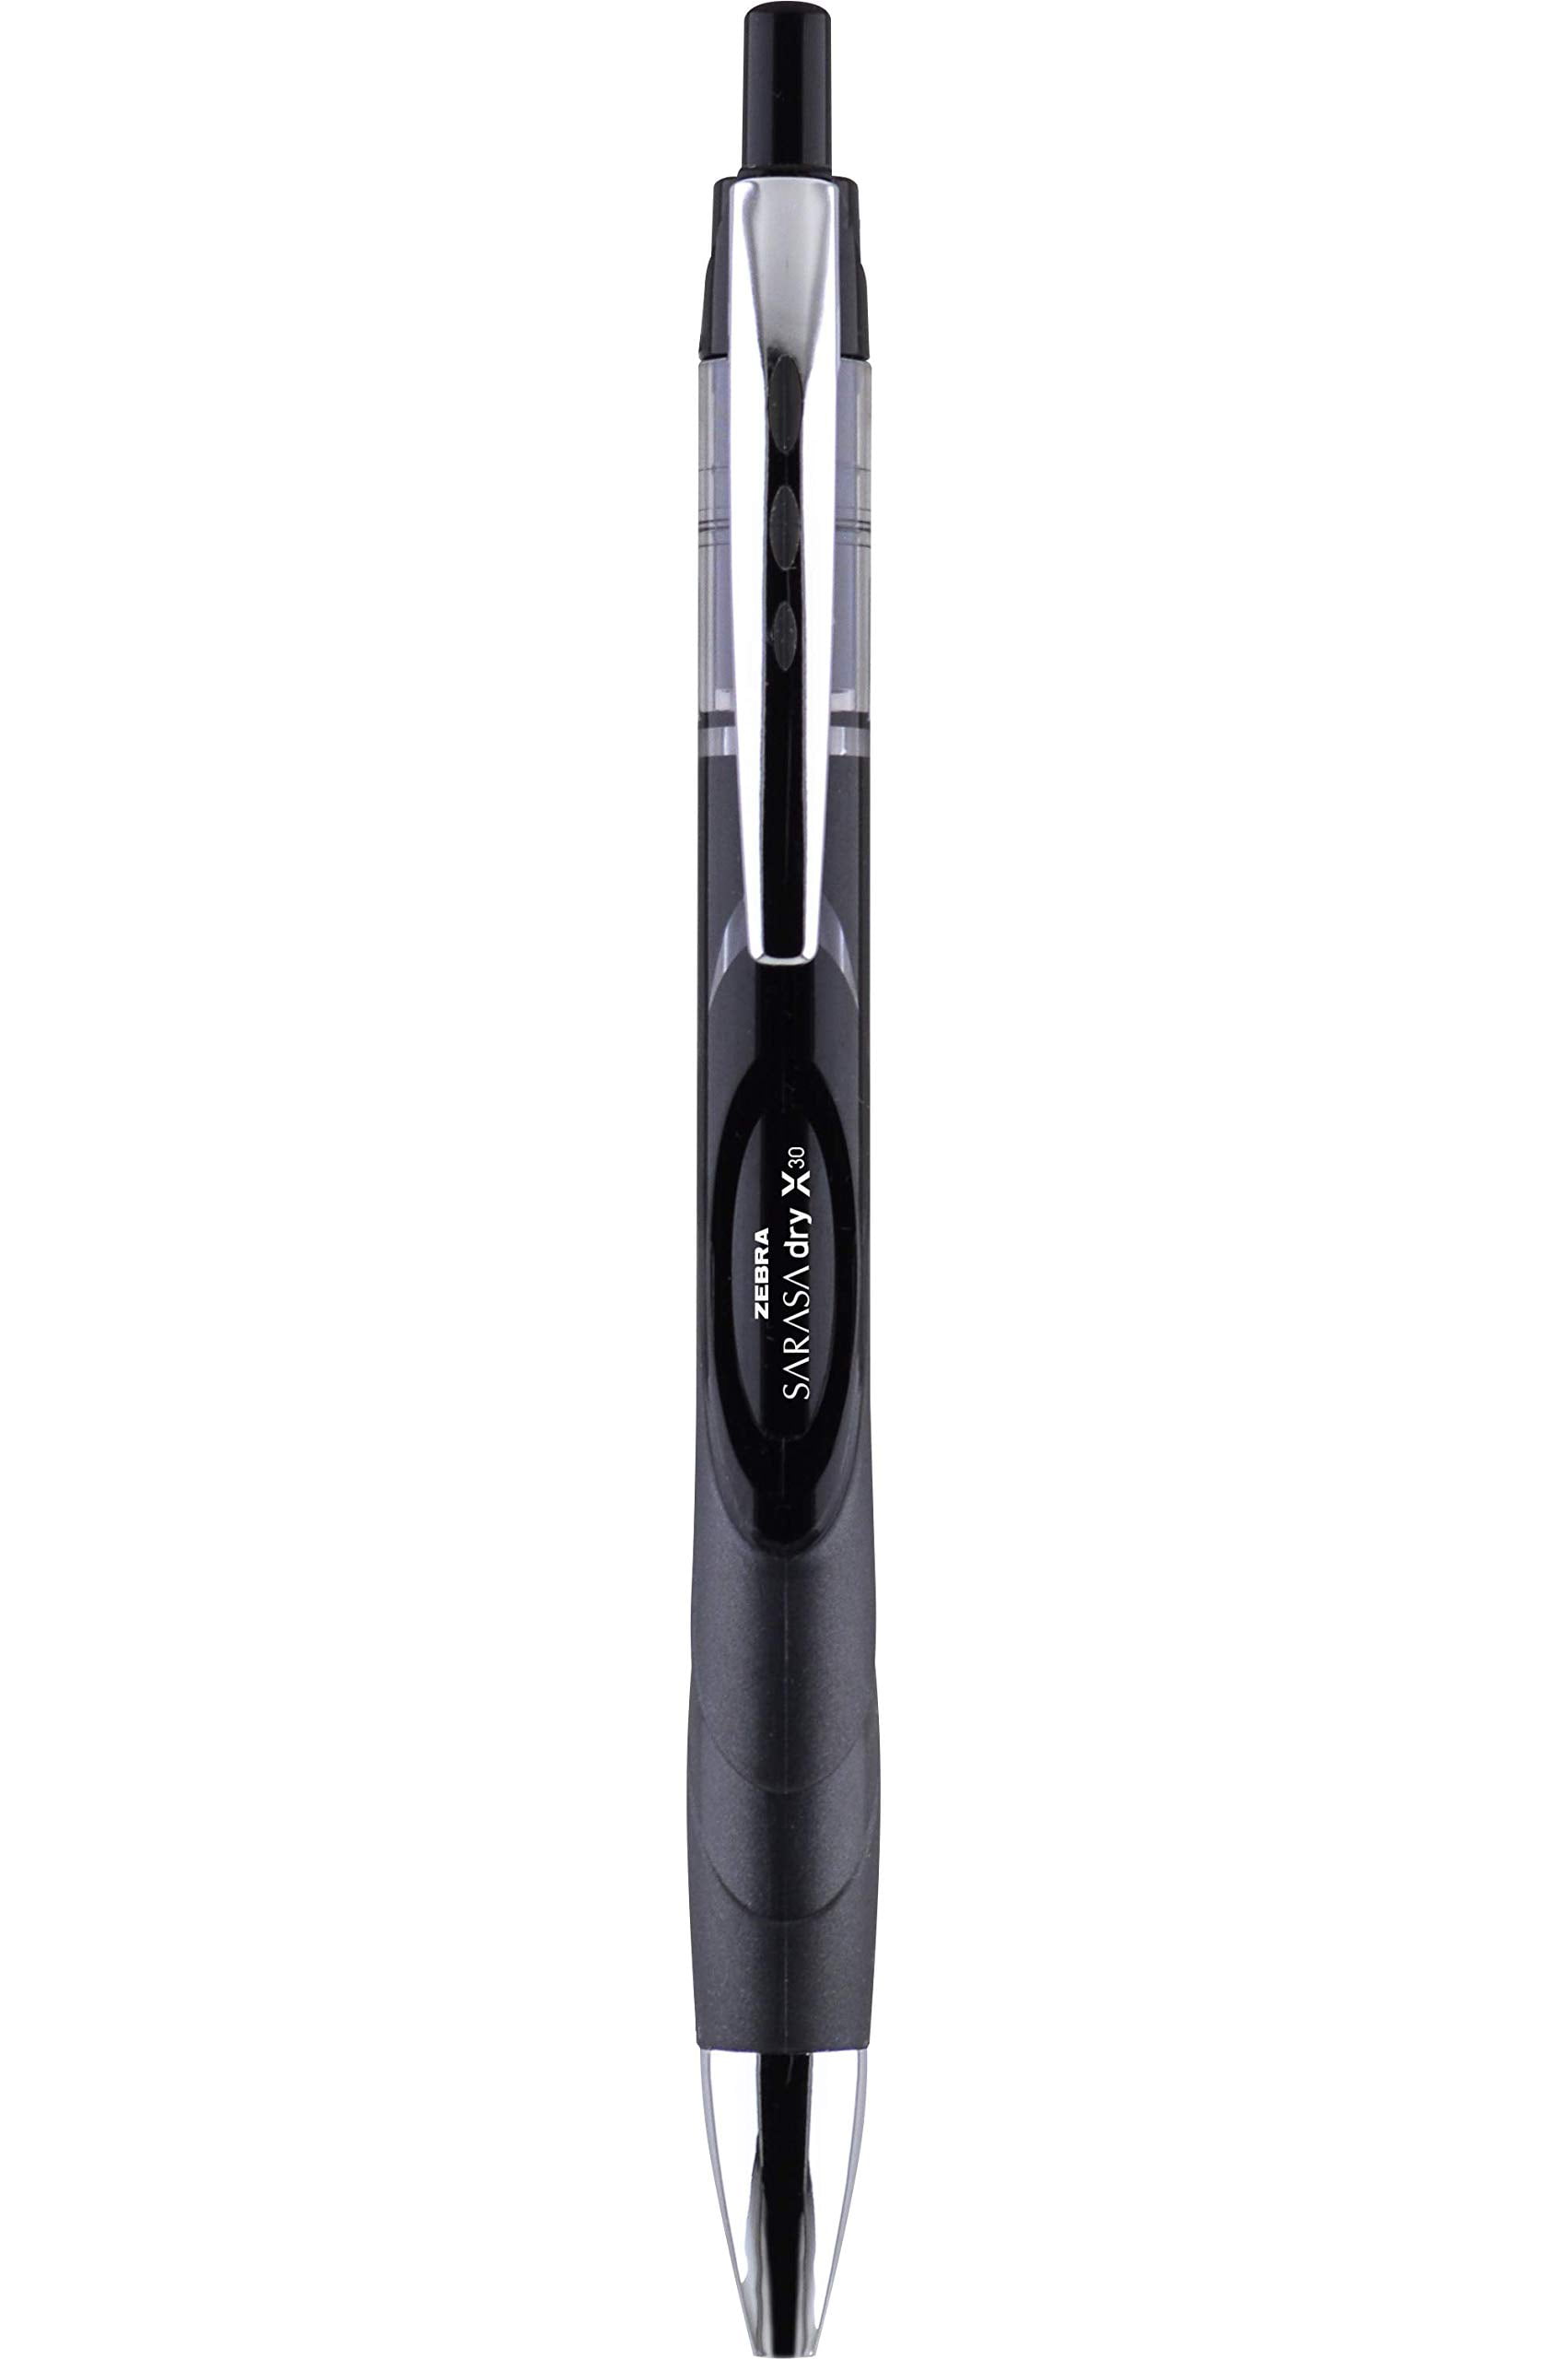 Zebra Pen Rapid Dry Ink Wide-Barrel 12/DZ Black 45610